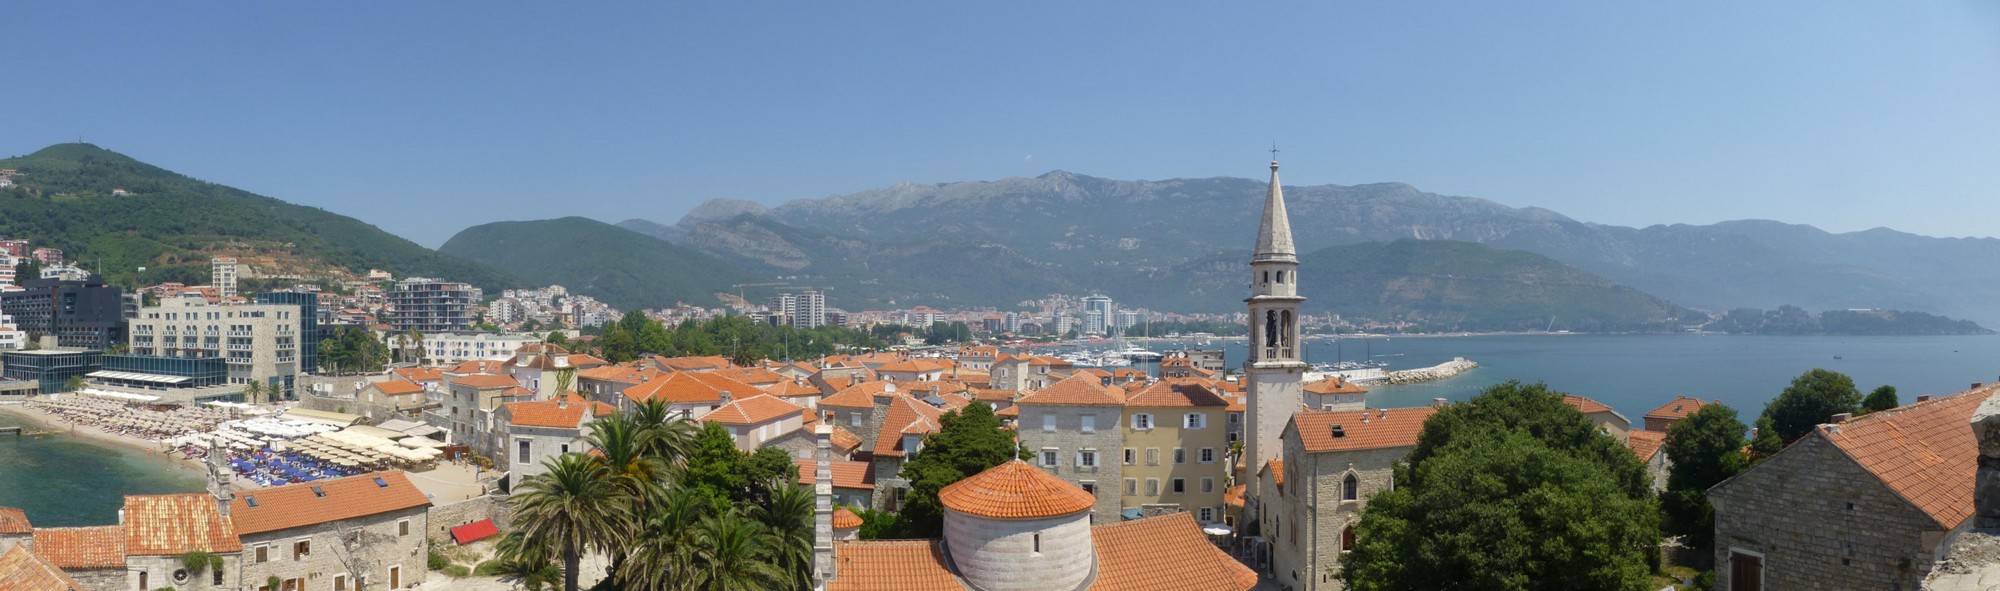 budva-montenegro